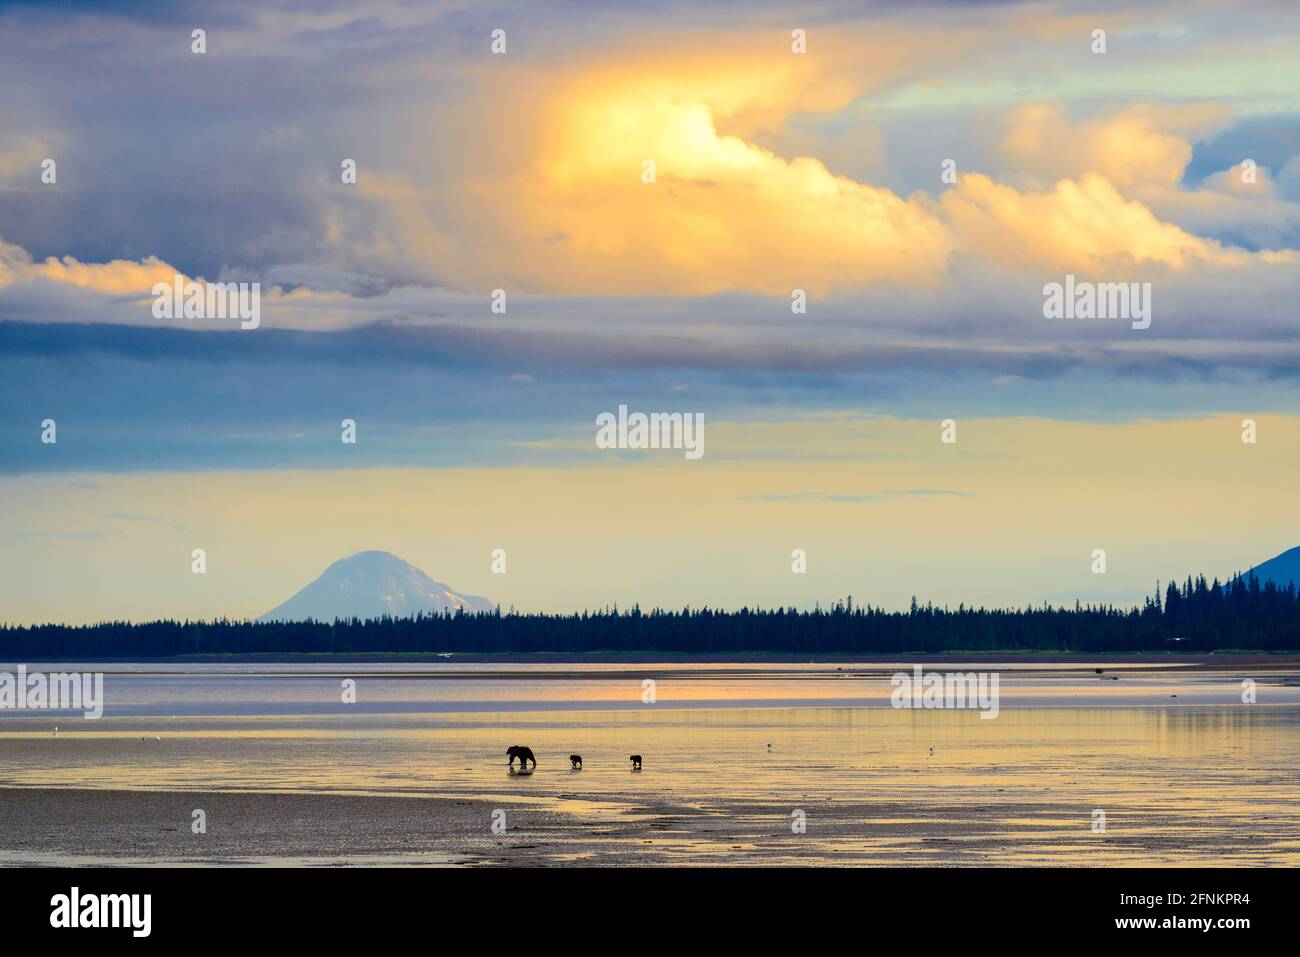 Un ours et ses deux petits marchent de l'autre côté de la plage au coucher du soleil. Ruisseau Silver Salmon, Alaska Banque D'Images